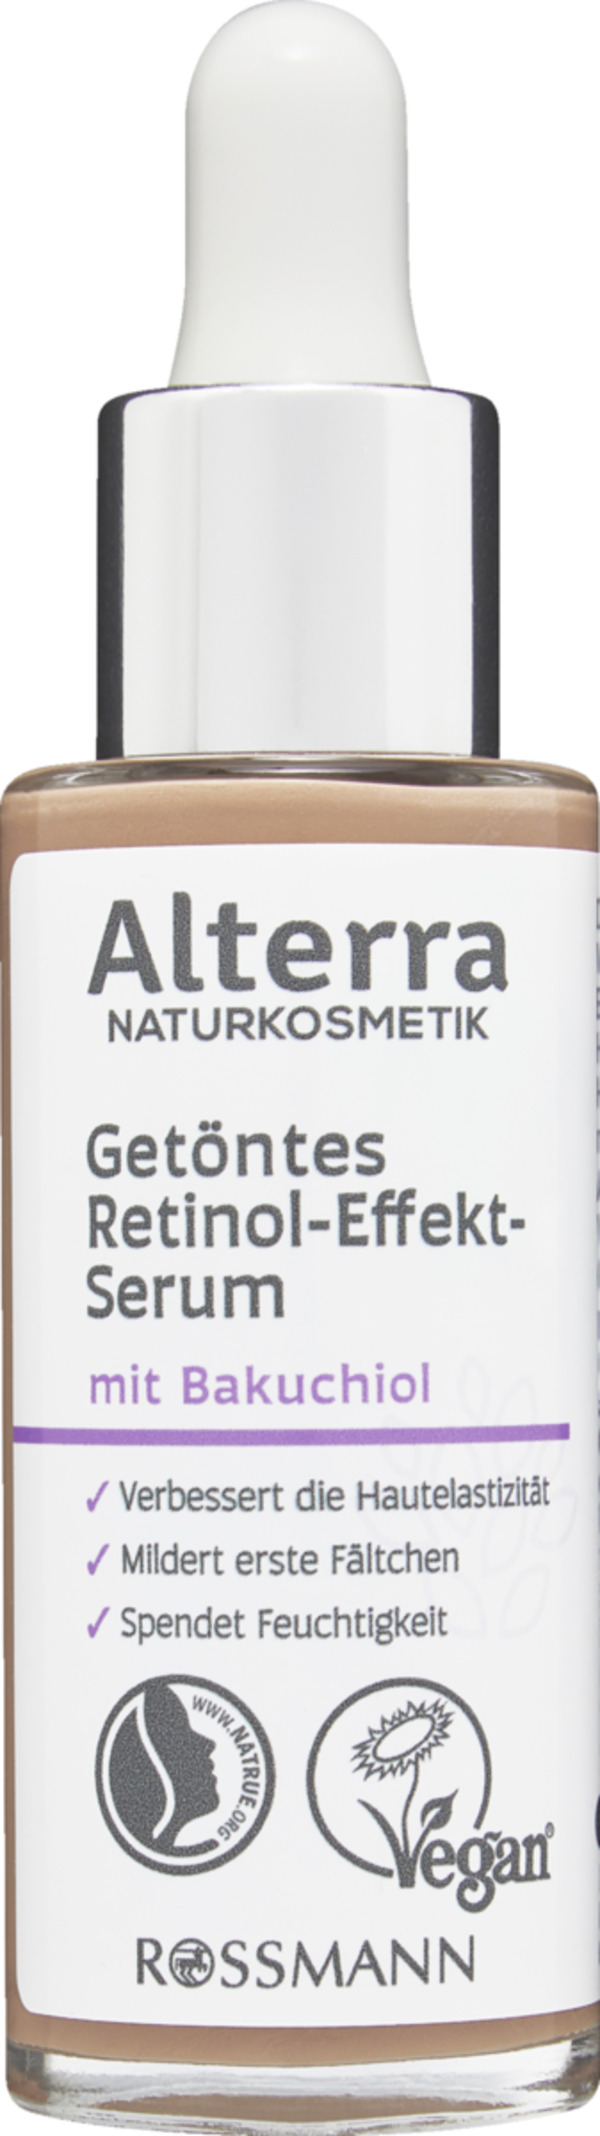 Bild 1 von Alterra NATURKOSMETIK getöntes Retinol-Effekt-Serum